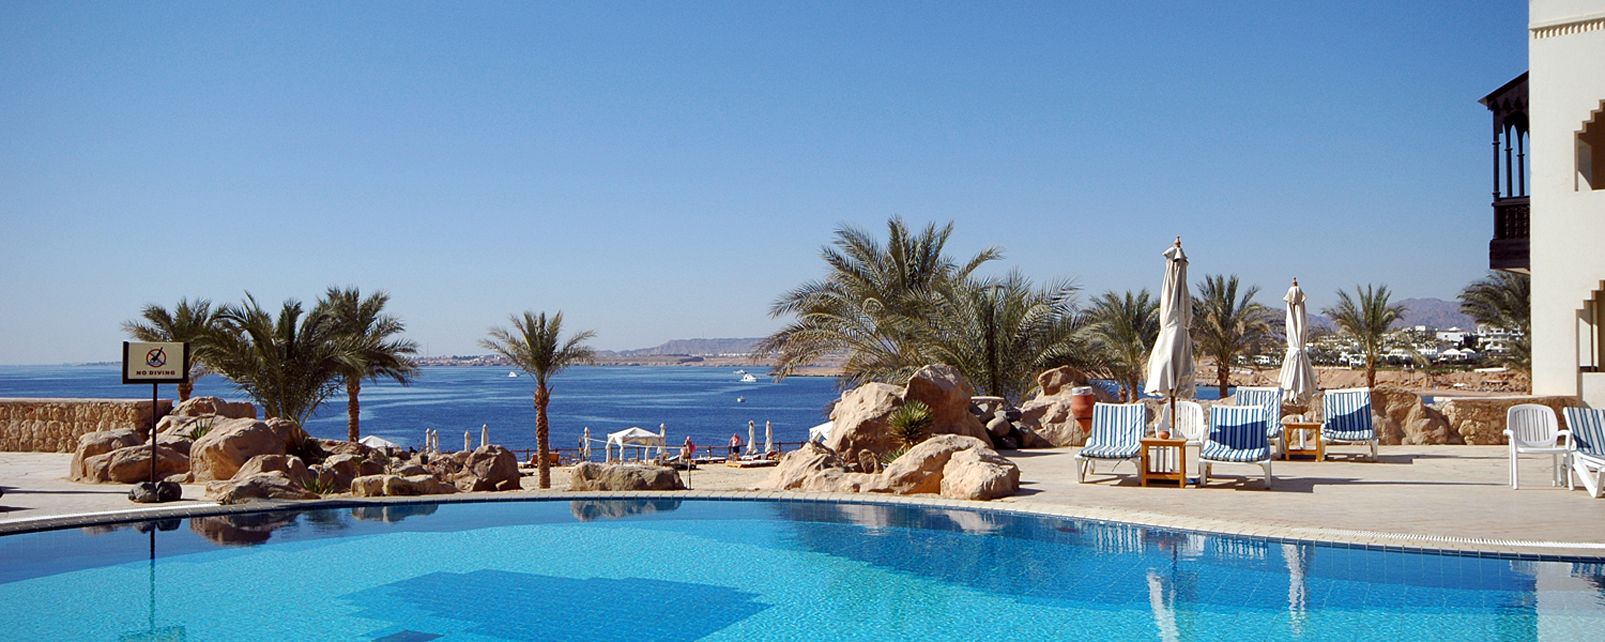 Hotel Crowne Plaza - Sharm El Sheikh